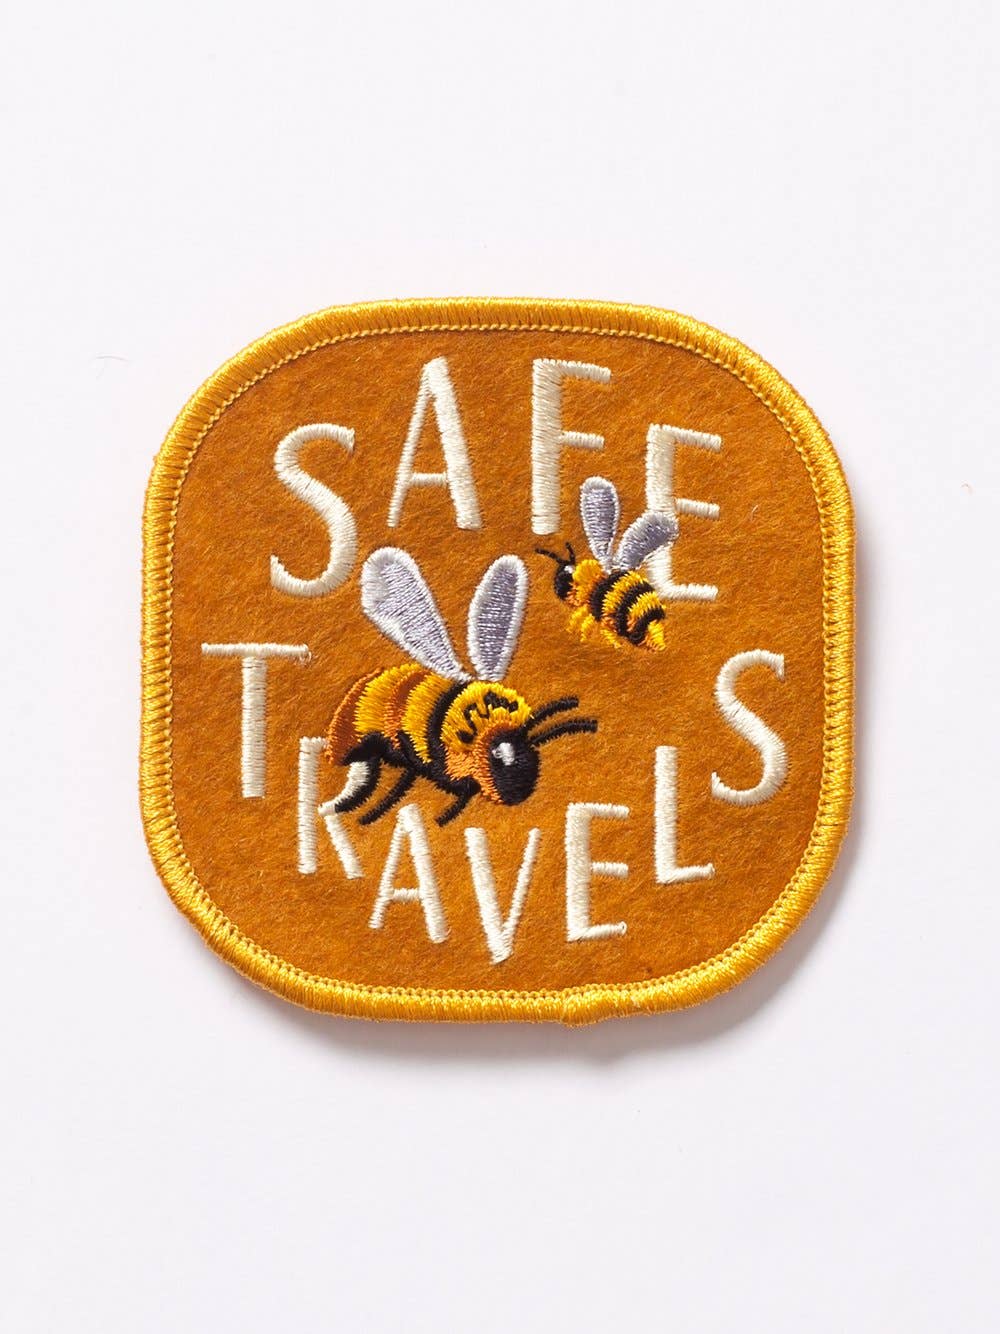 Safe Travels - Felt Badge